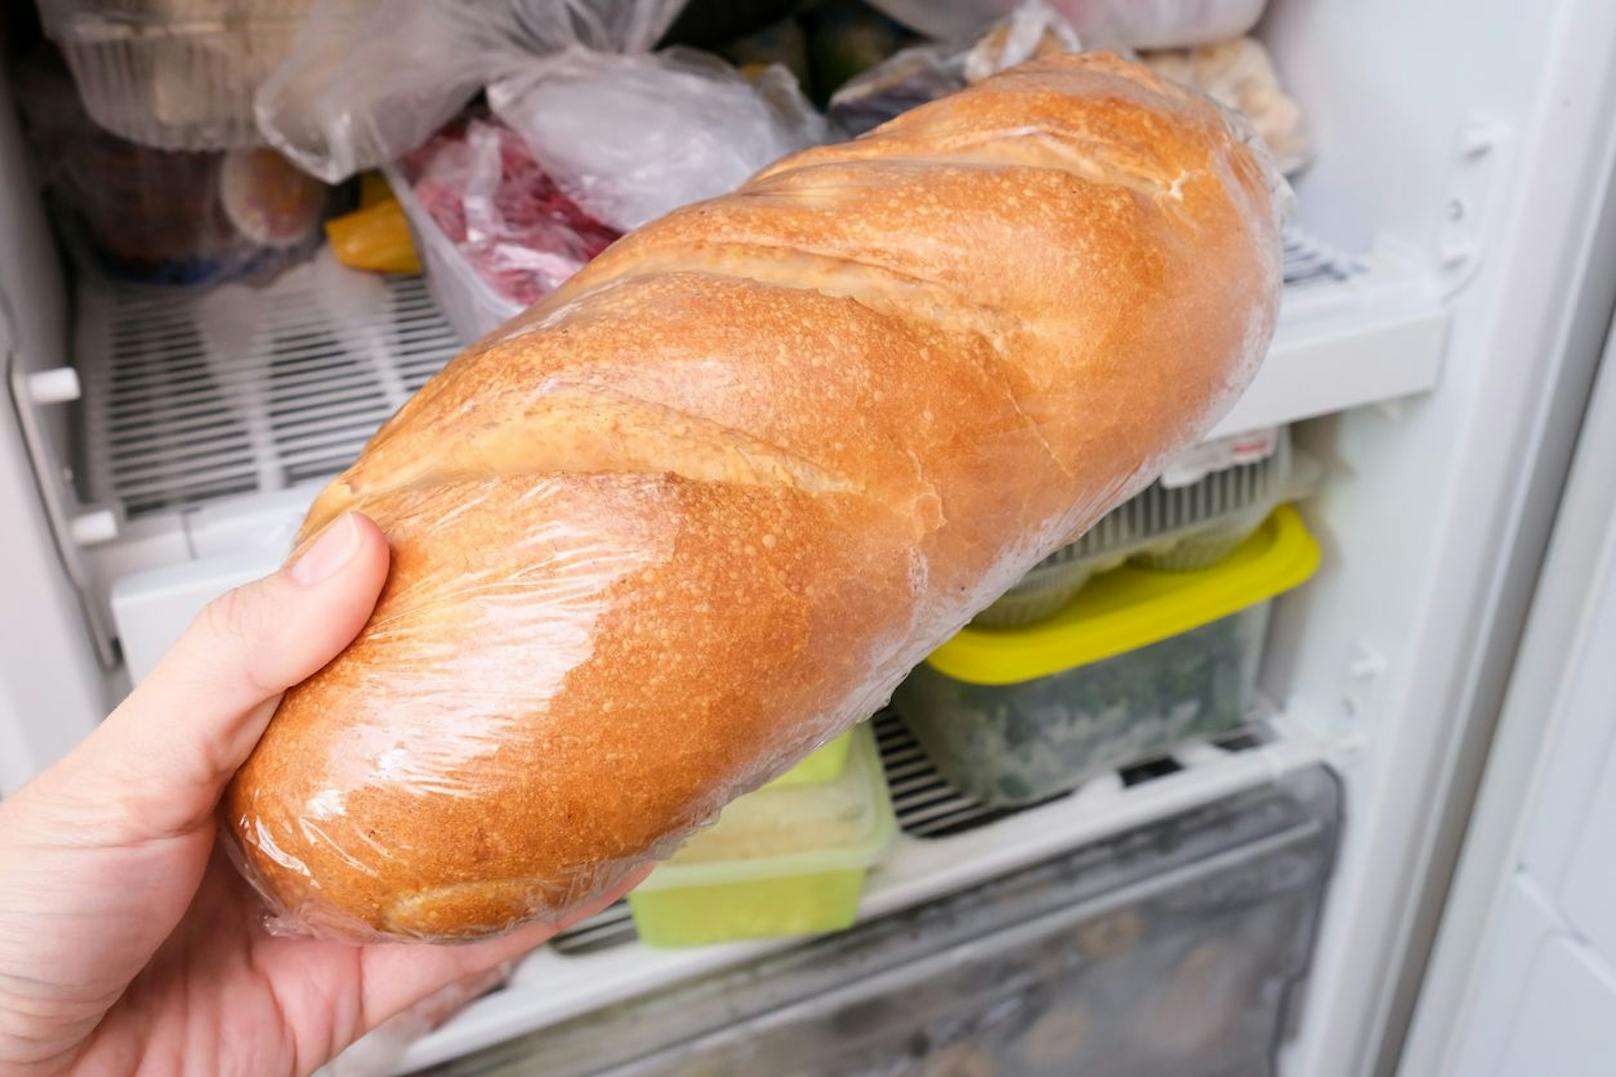 Eingefrorenes Brot, das im Ganzen gelagert wird, ist 4-6 Monate problemlos haltbar. Ist es in Scheiben geschnitten, sollte es innerhalb von 1-3 Monaten verbraucht werden.&nbsp;